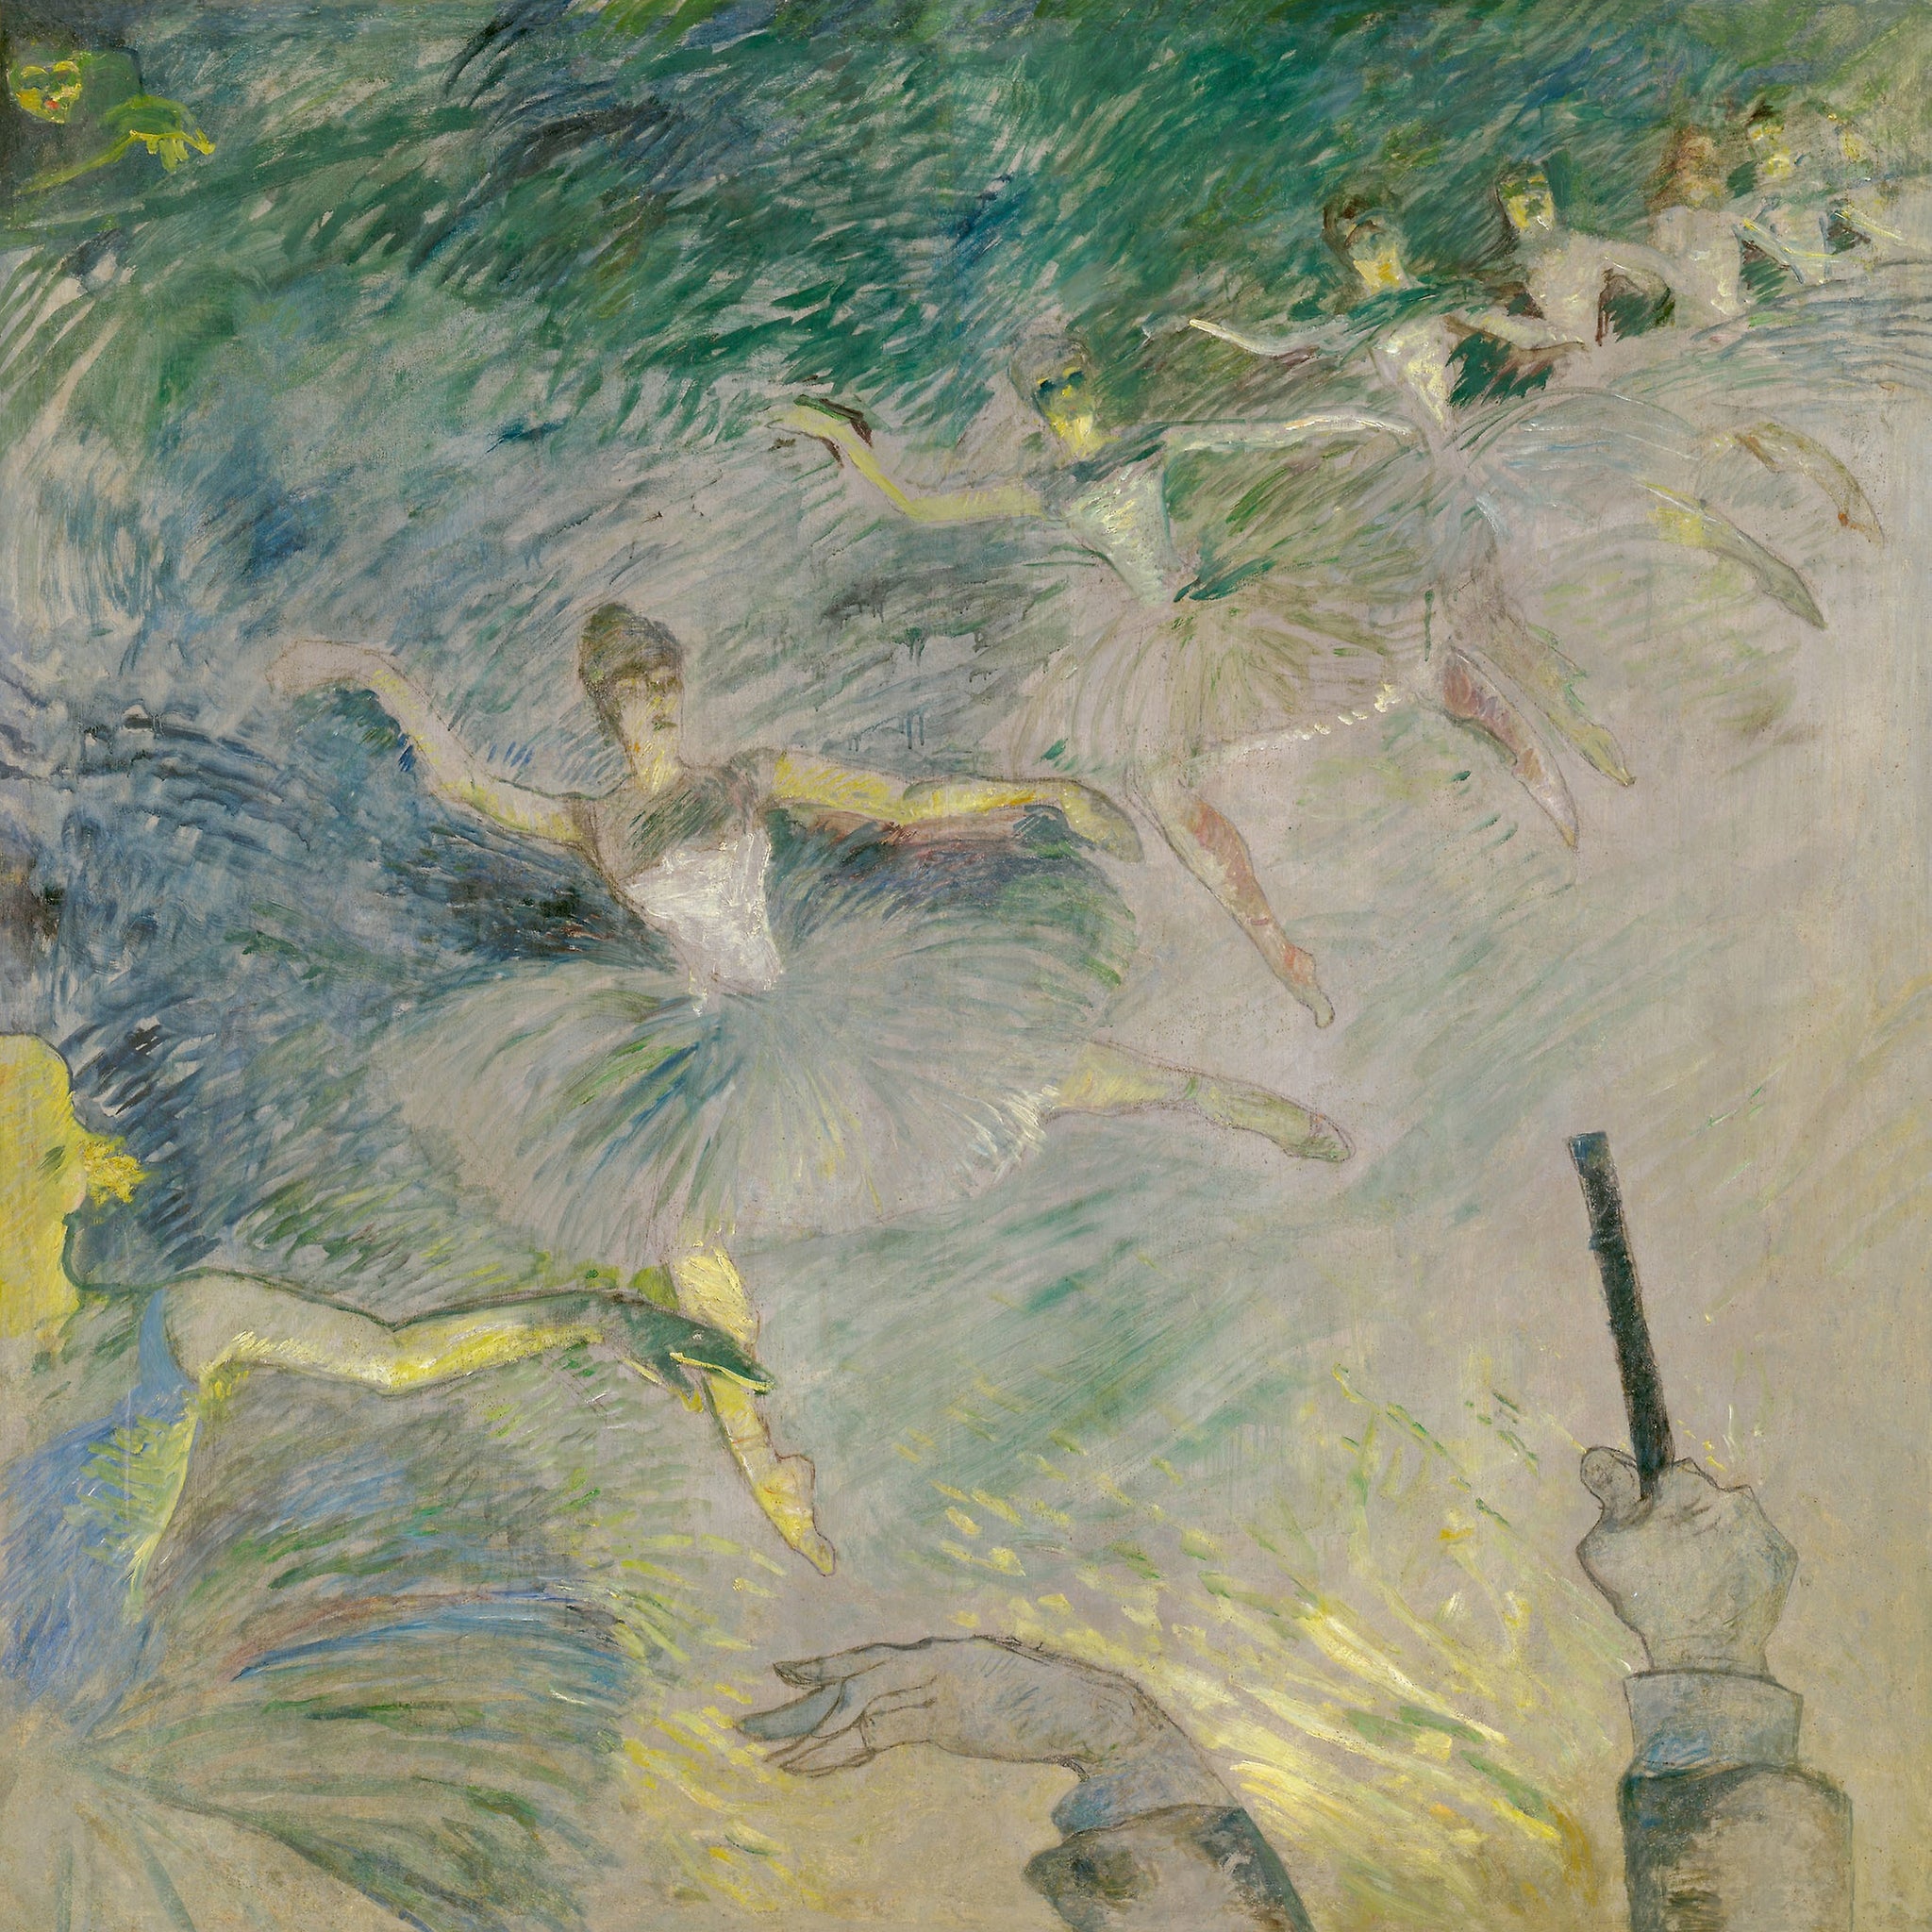 Le ballet - Toulouse Lautrec